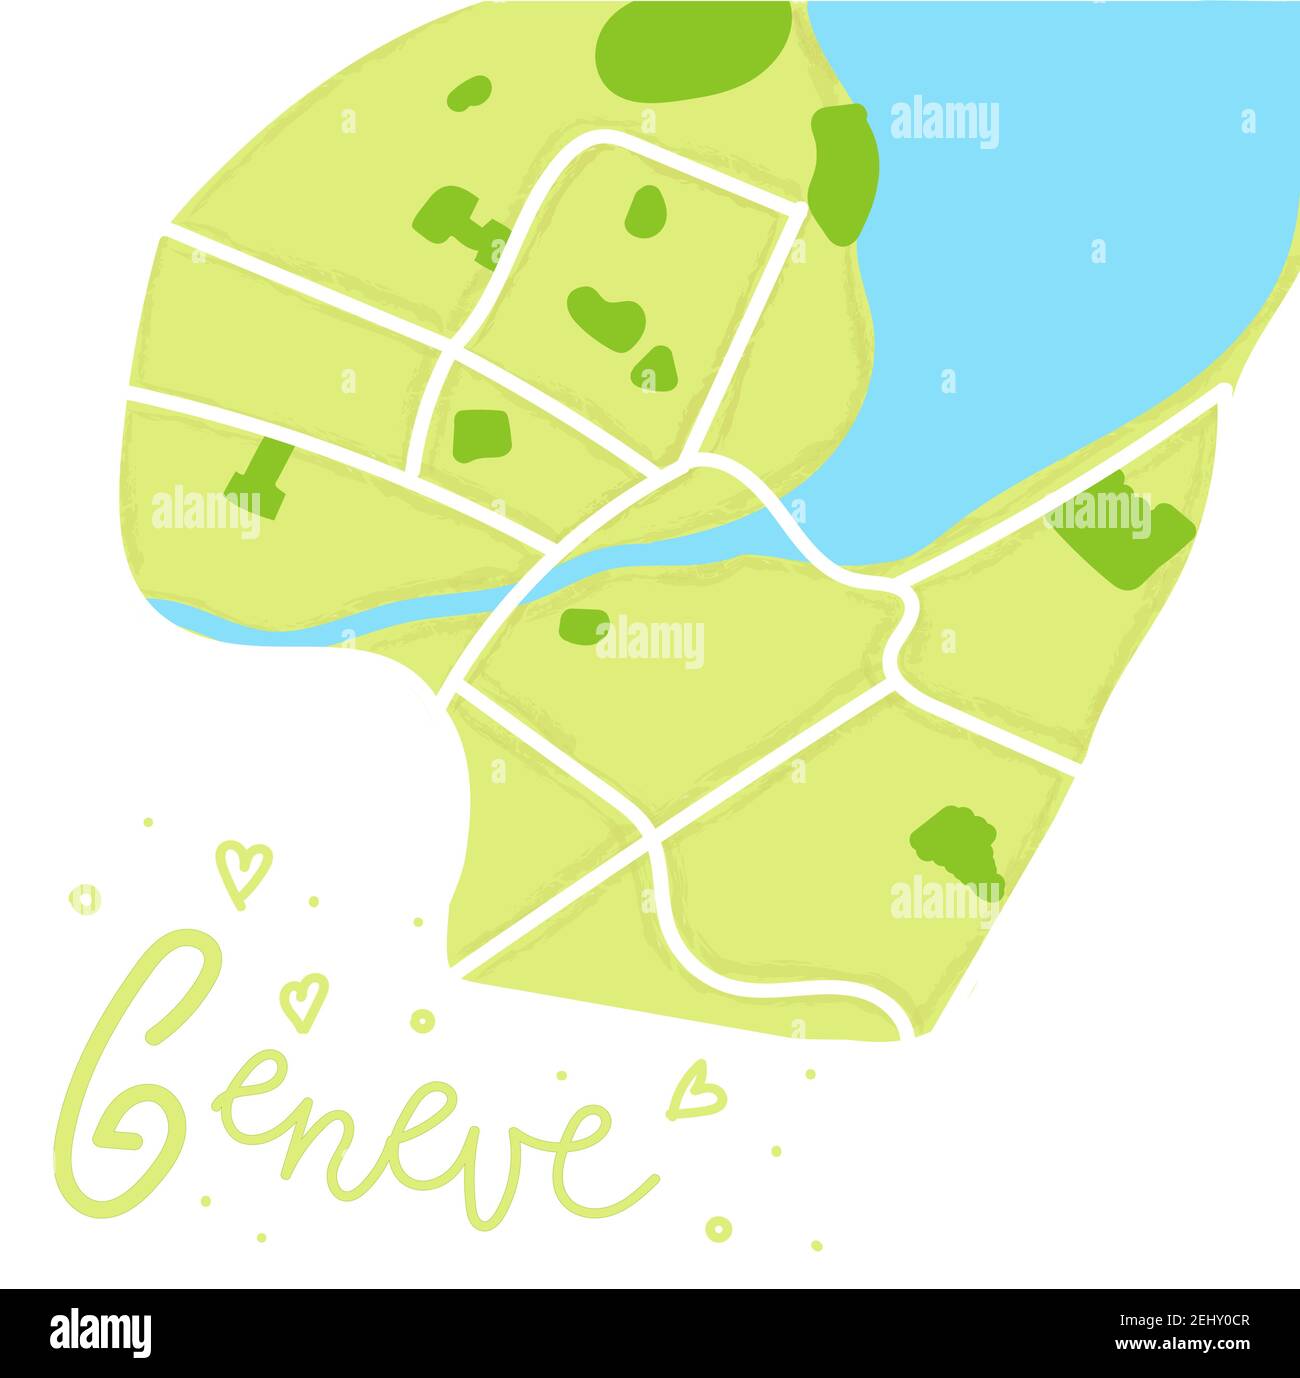 Mapa plano de color de dibujos animados del centro de Ginebra. La tierra es verde. Calles de correo blancas. Mapa de la ciudad de Suiza europea lindo y divertido. Ilustración vectorial Ilustración del Vector